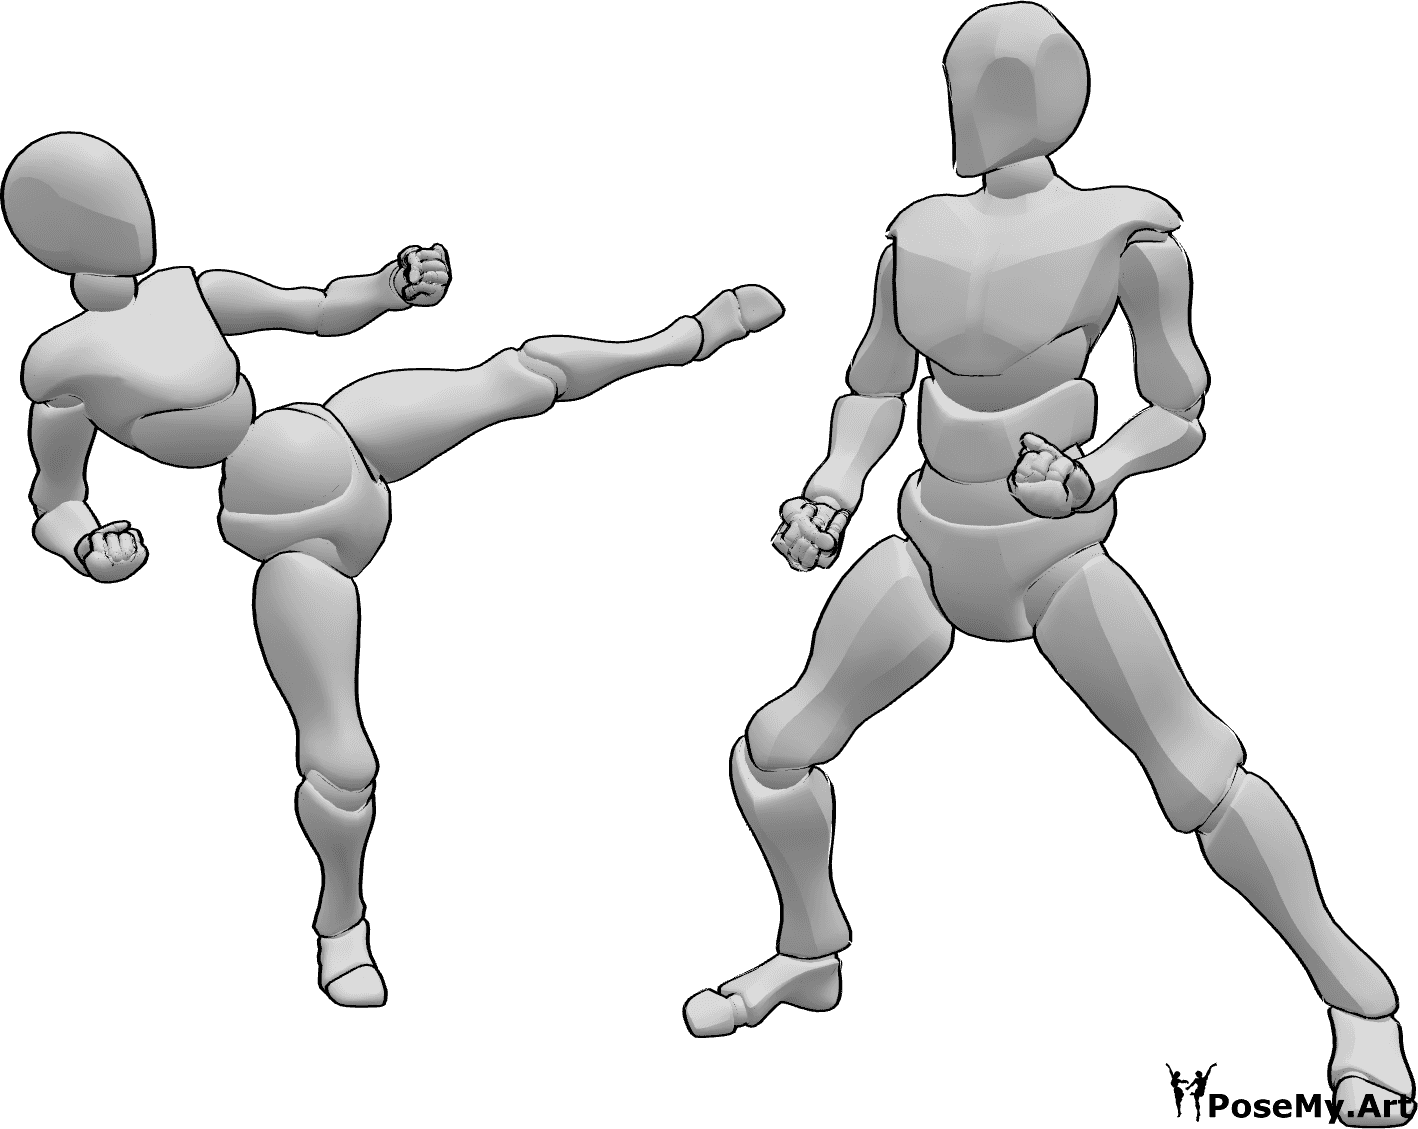 Posen-Referenz- Weibliche männliche Karate-Pose - Frau und Mann kämpfen, Karate-Pose